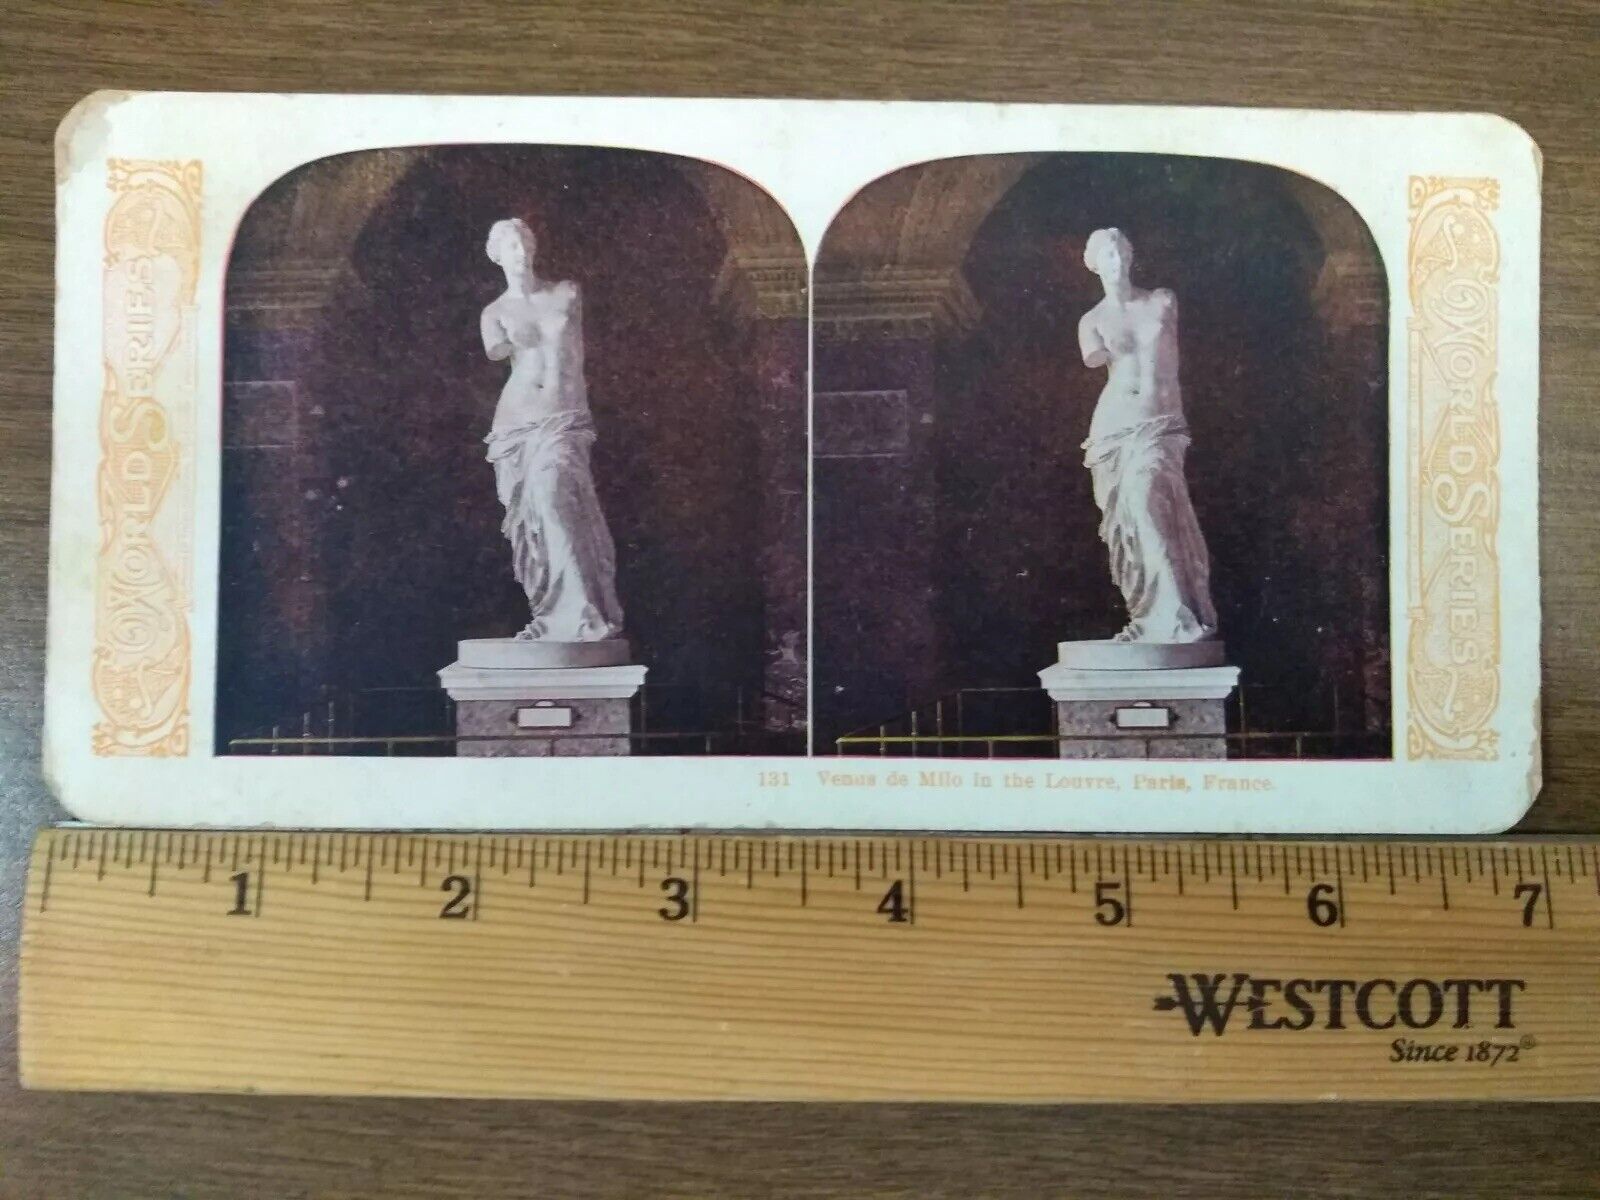 Antique Stereoscope Slide Venus de Milo Louvre Paris France #131 1905 Stereoview